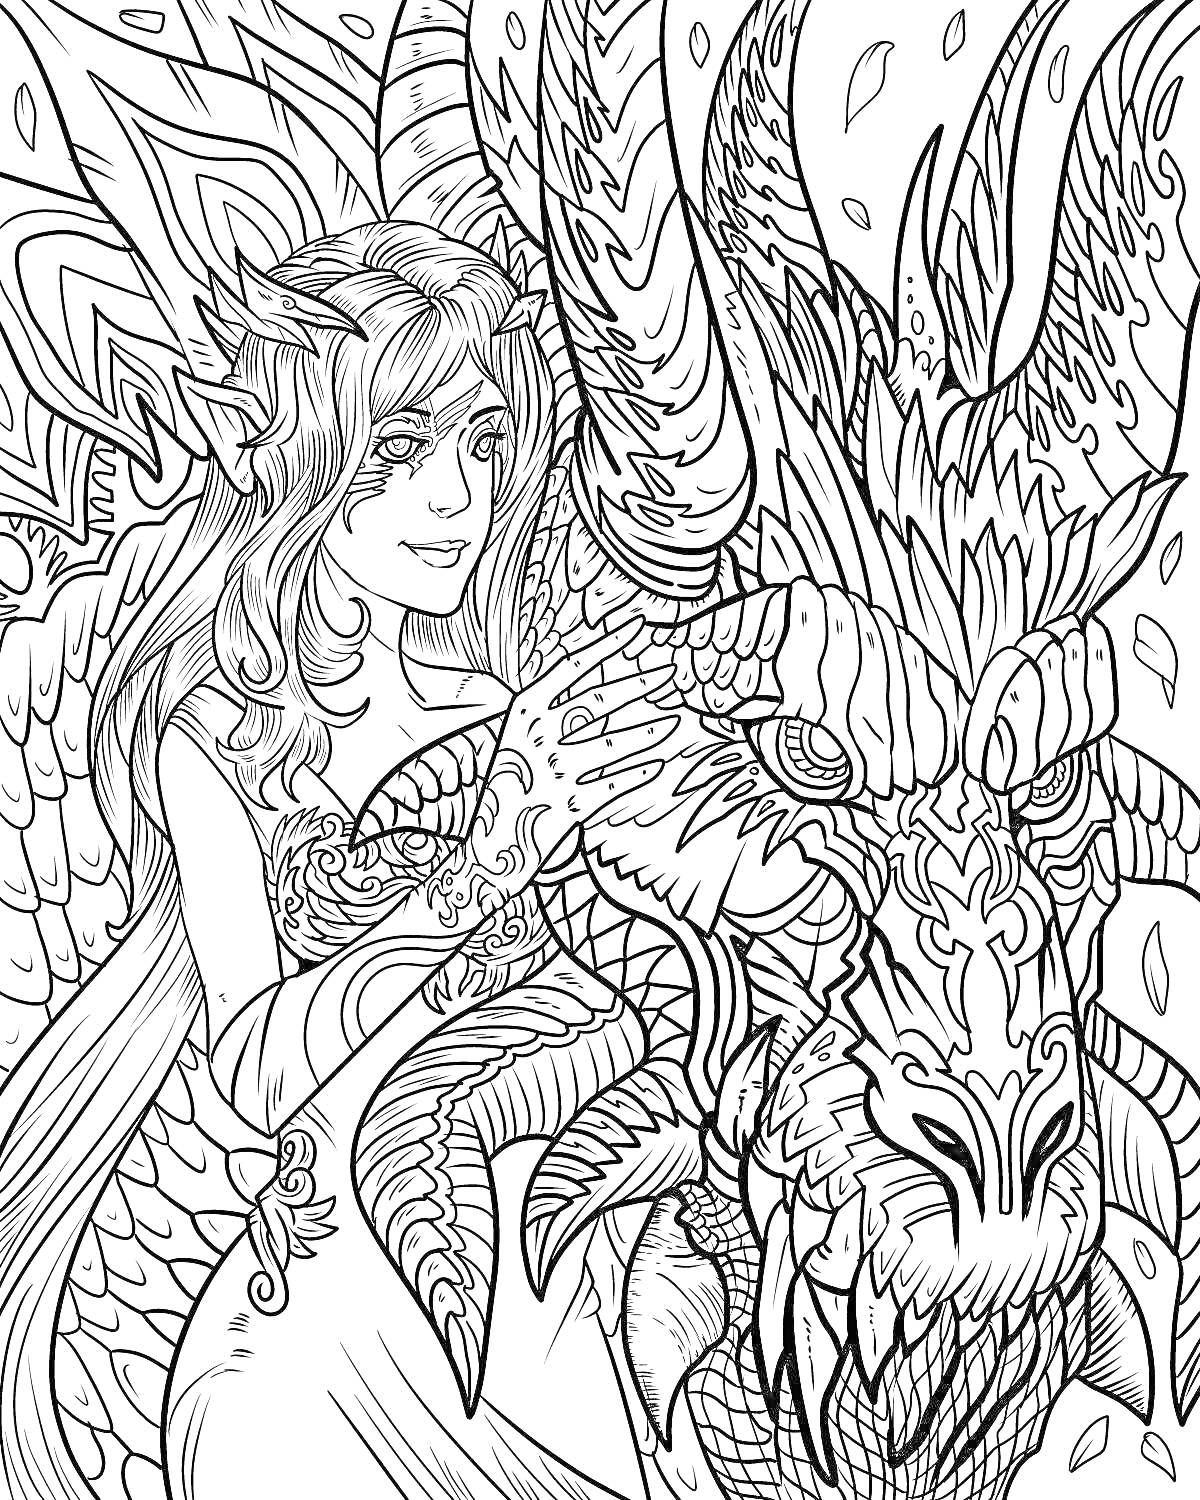 Раскраска Фея обнимает большого дракона, фон из мечтательных узоров и падающих листьев